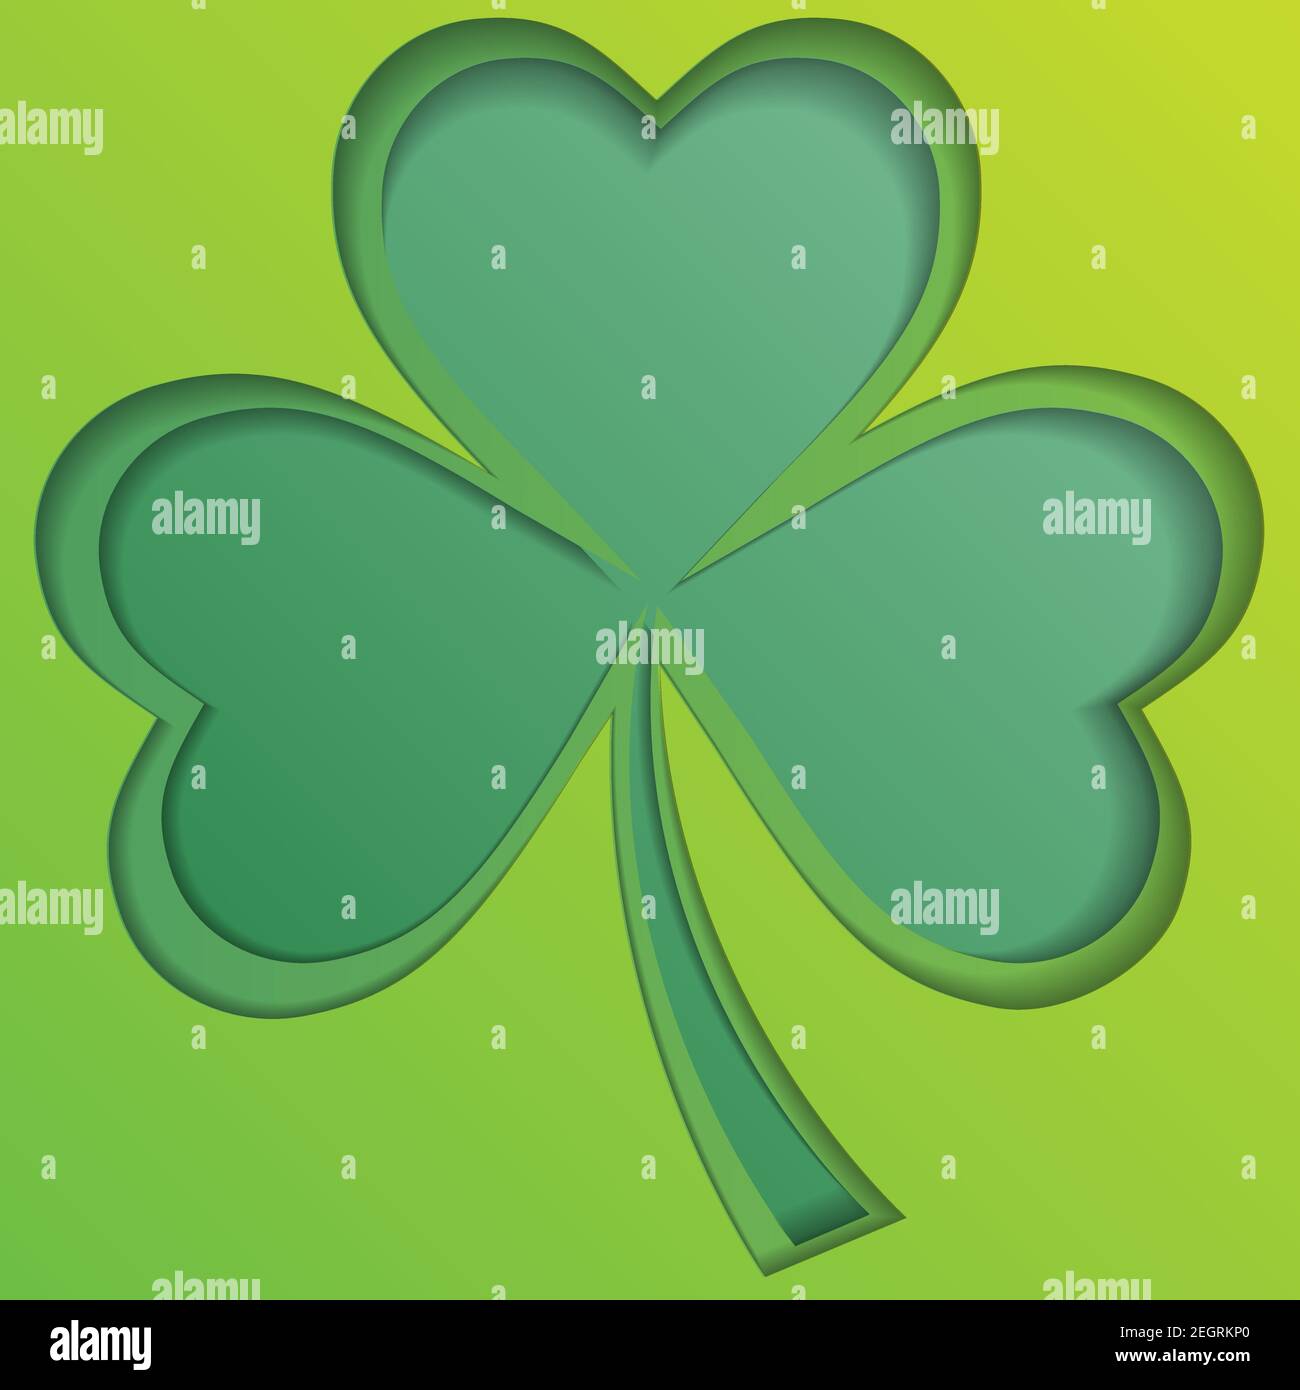 Embleme Blatt Klee. Irischer Kleeblatt hinterläßt Hintergrund für Happy St. Patrick s Day. EPS 10 Stock Vektor